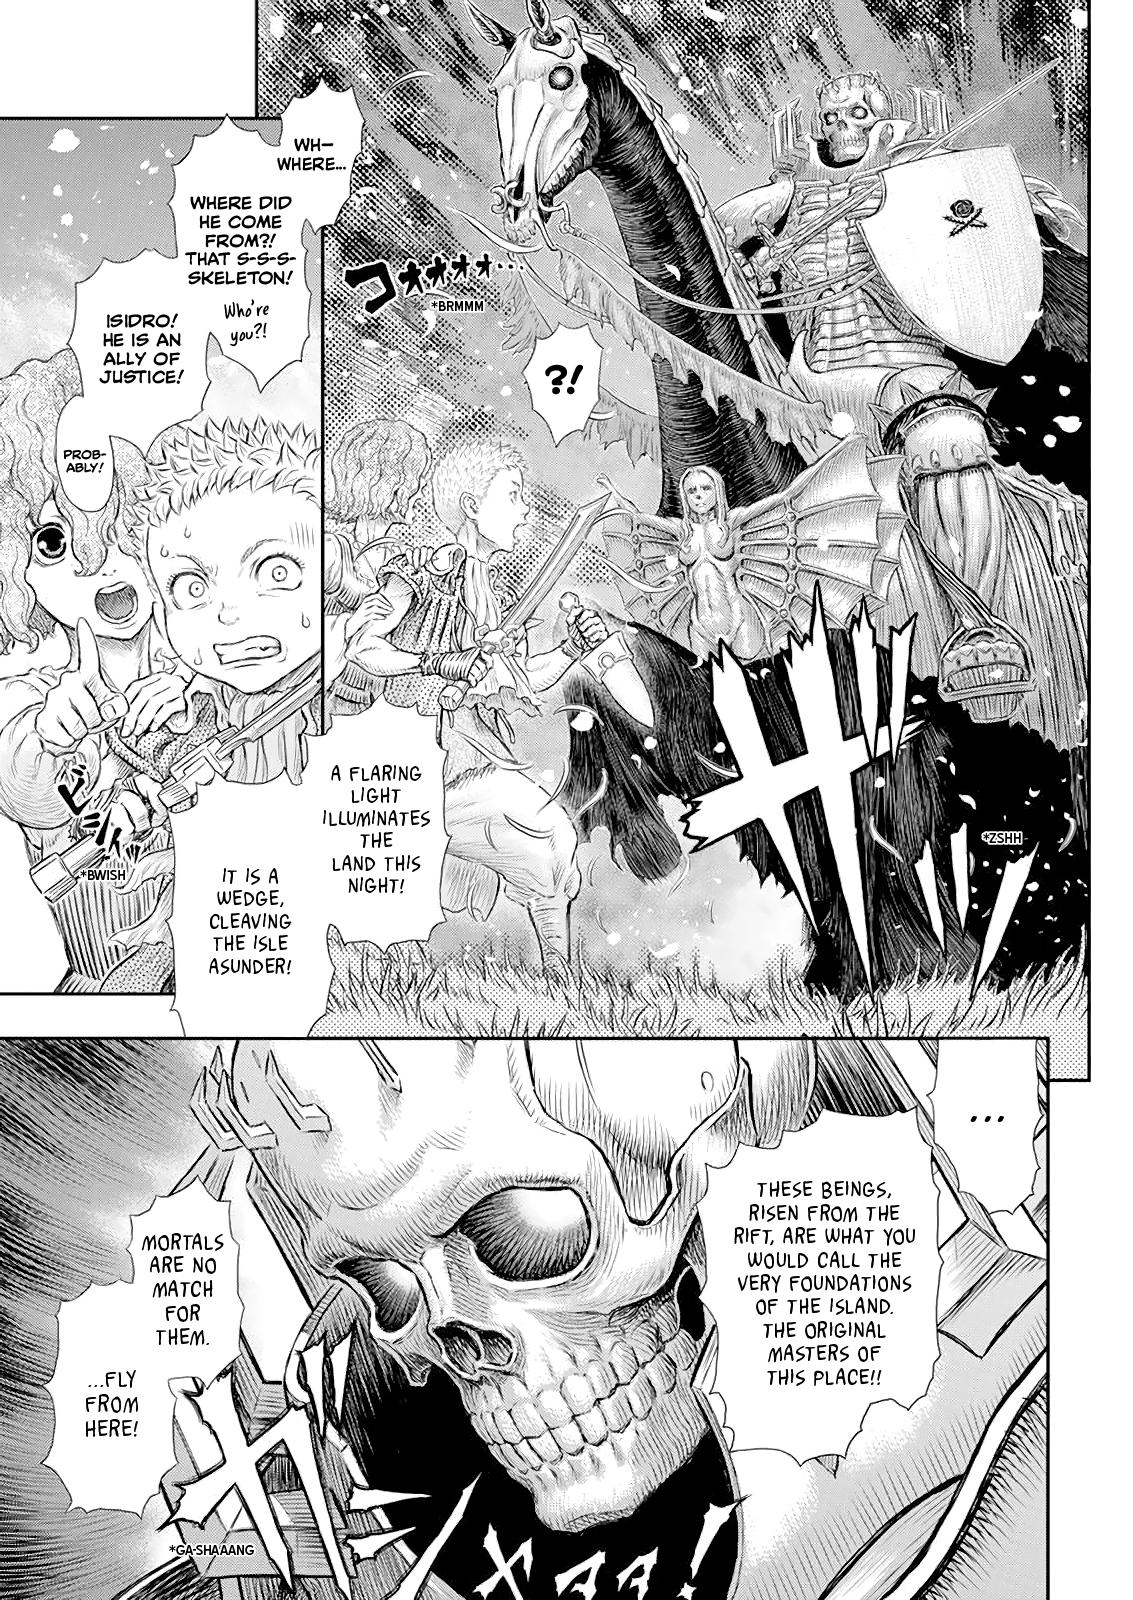 Berserk Manga Chapter 368 image 04